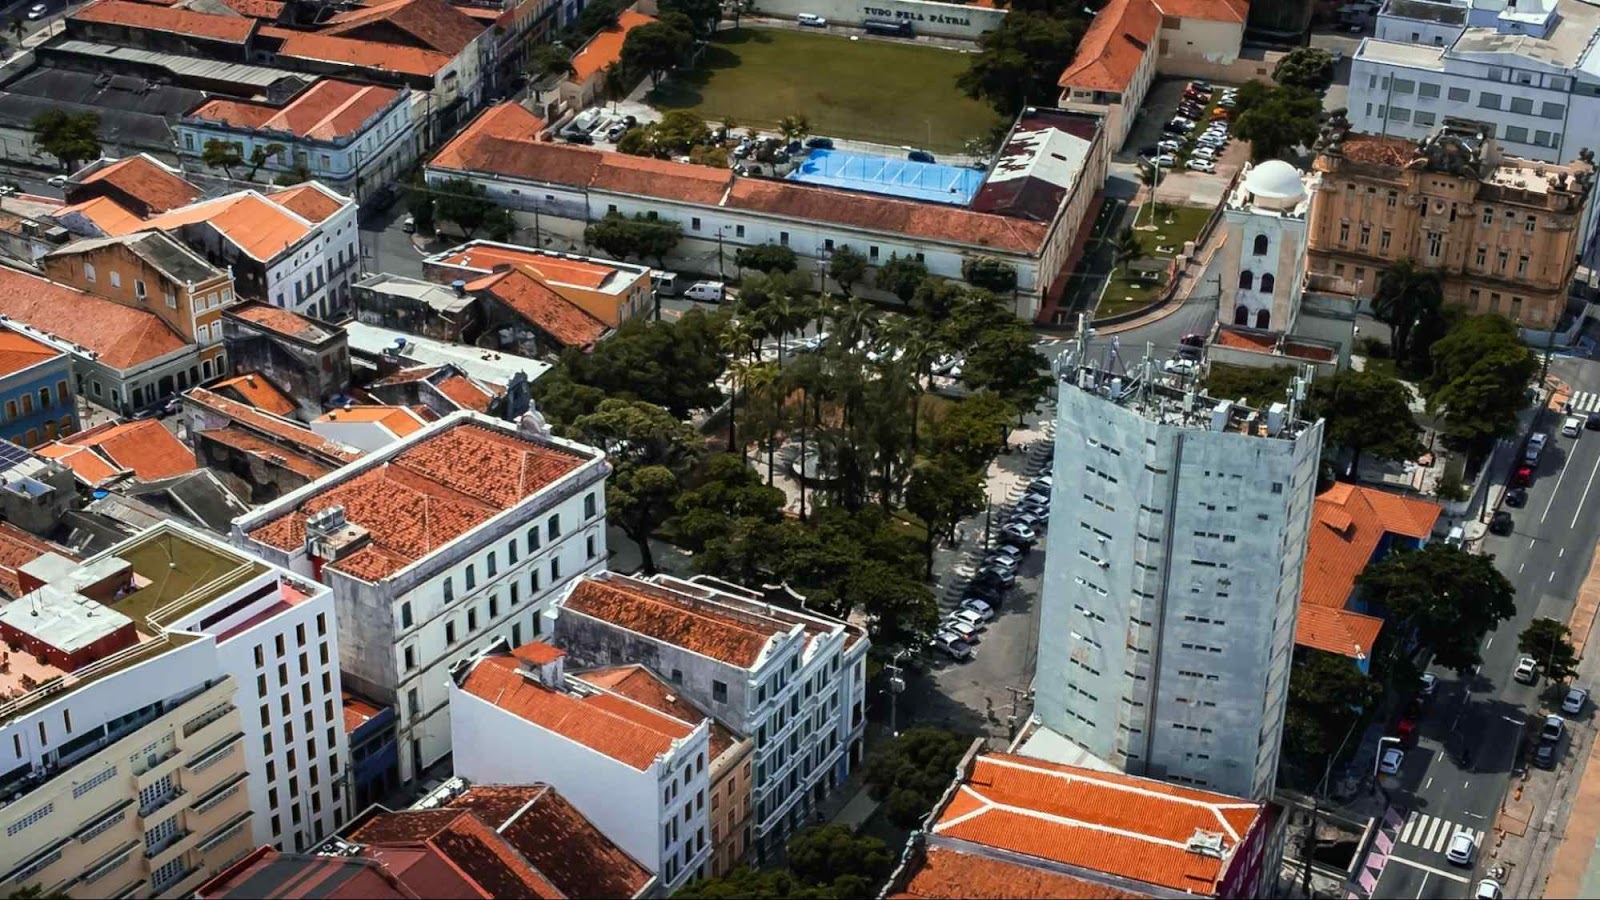 Vista aérea de uma parte do Recife Antigo. A paisagem é formada majoritariamente por antigos prédios de fachada estreita, no estilo arquitetônico holandês, mas também há construções mais modernas